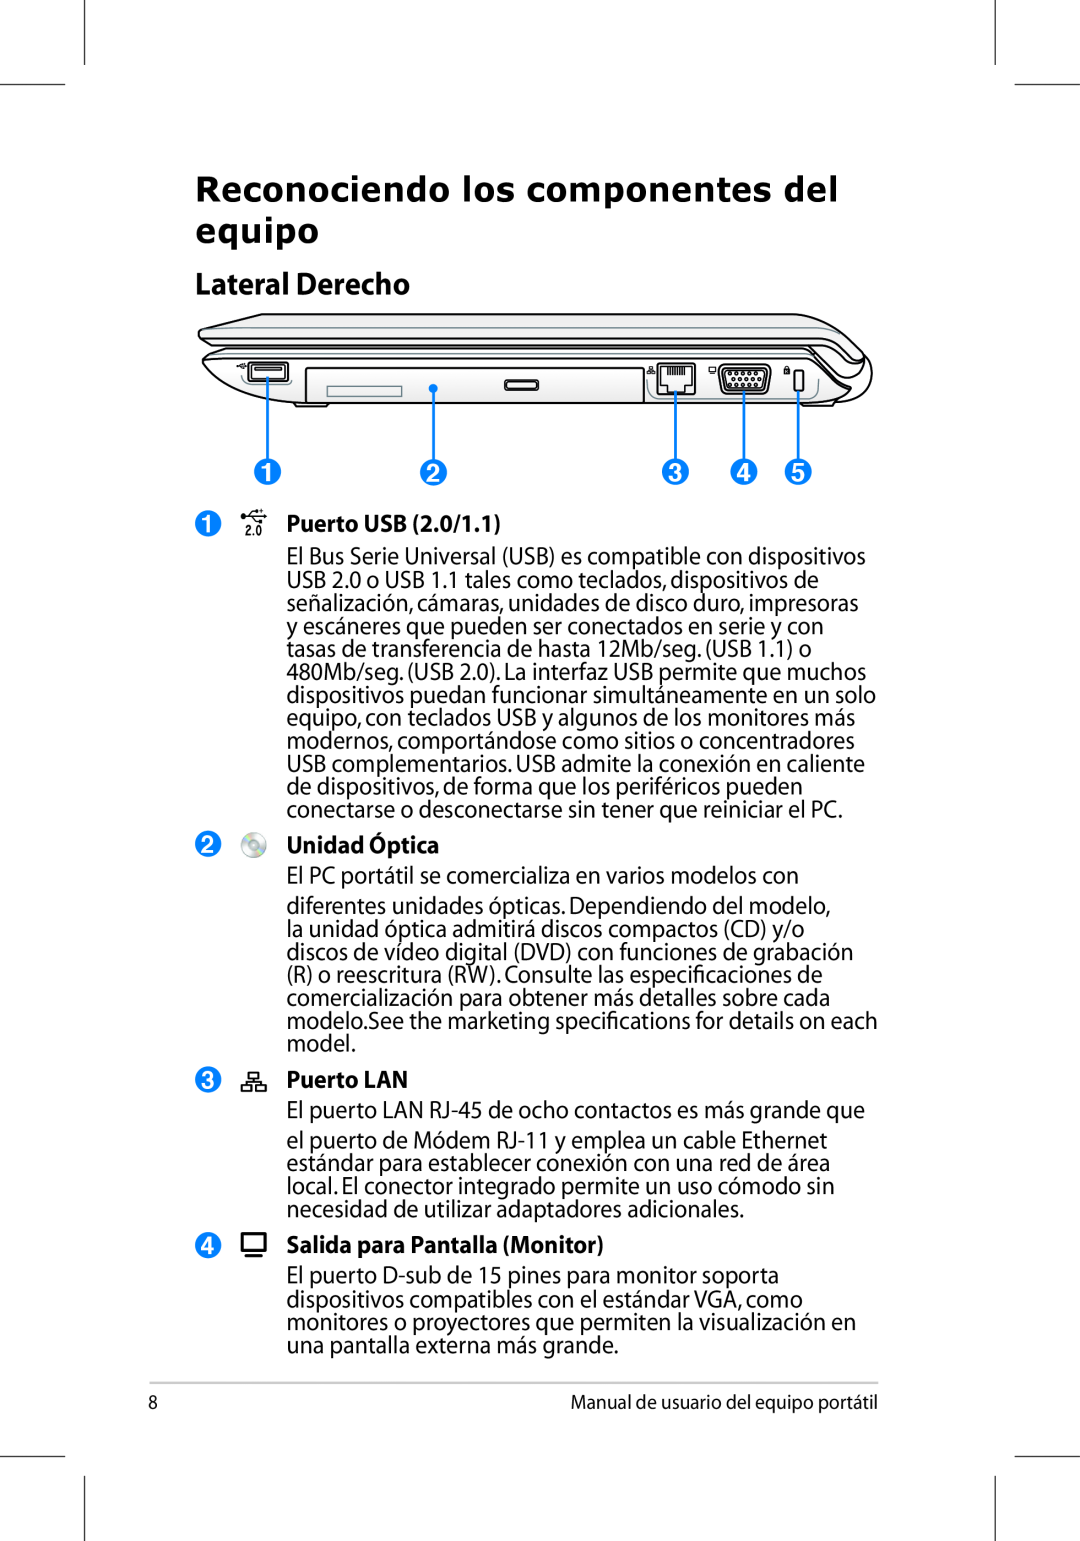 Asus UL50/PRO5G/X5G manual Reconociendo los componentes del equipo, Lateral Derecho, Puerto USB 2.0/1.1, Unidad Óptica 